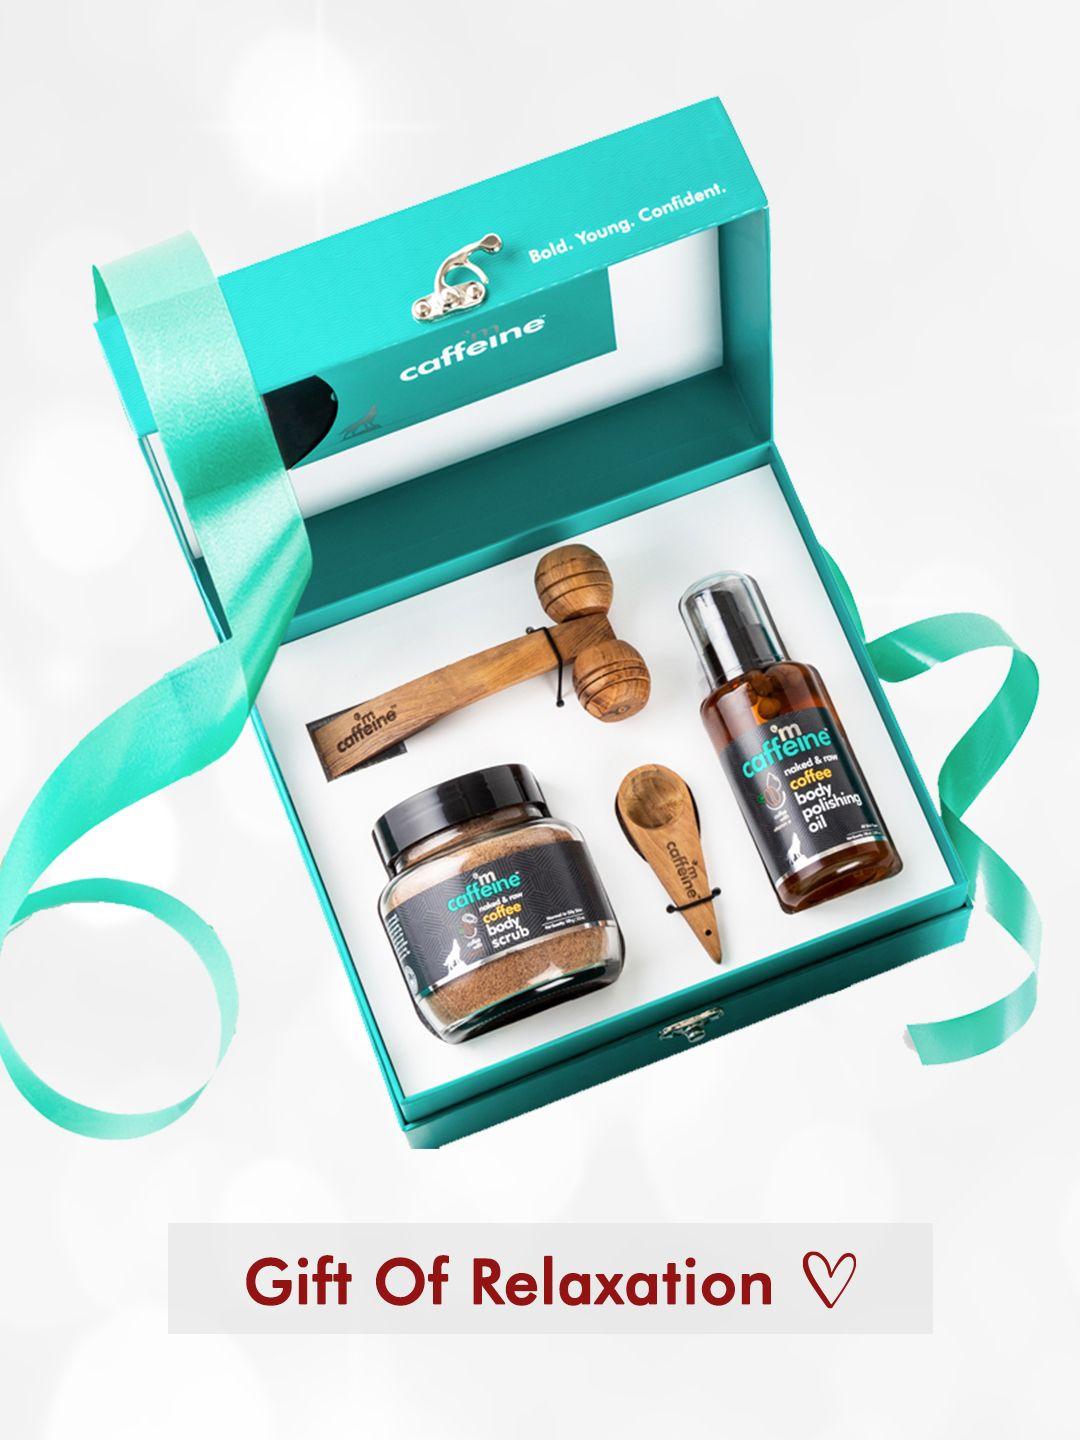 mcaffeine de-stress gift kit with relaxing wooden massager